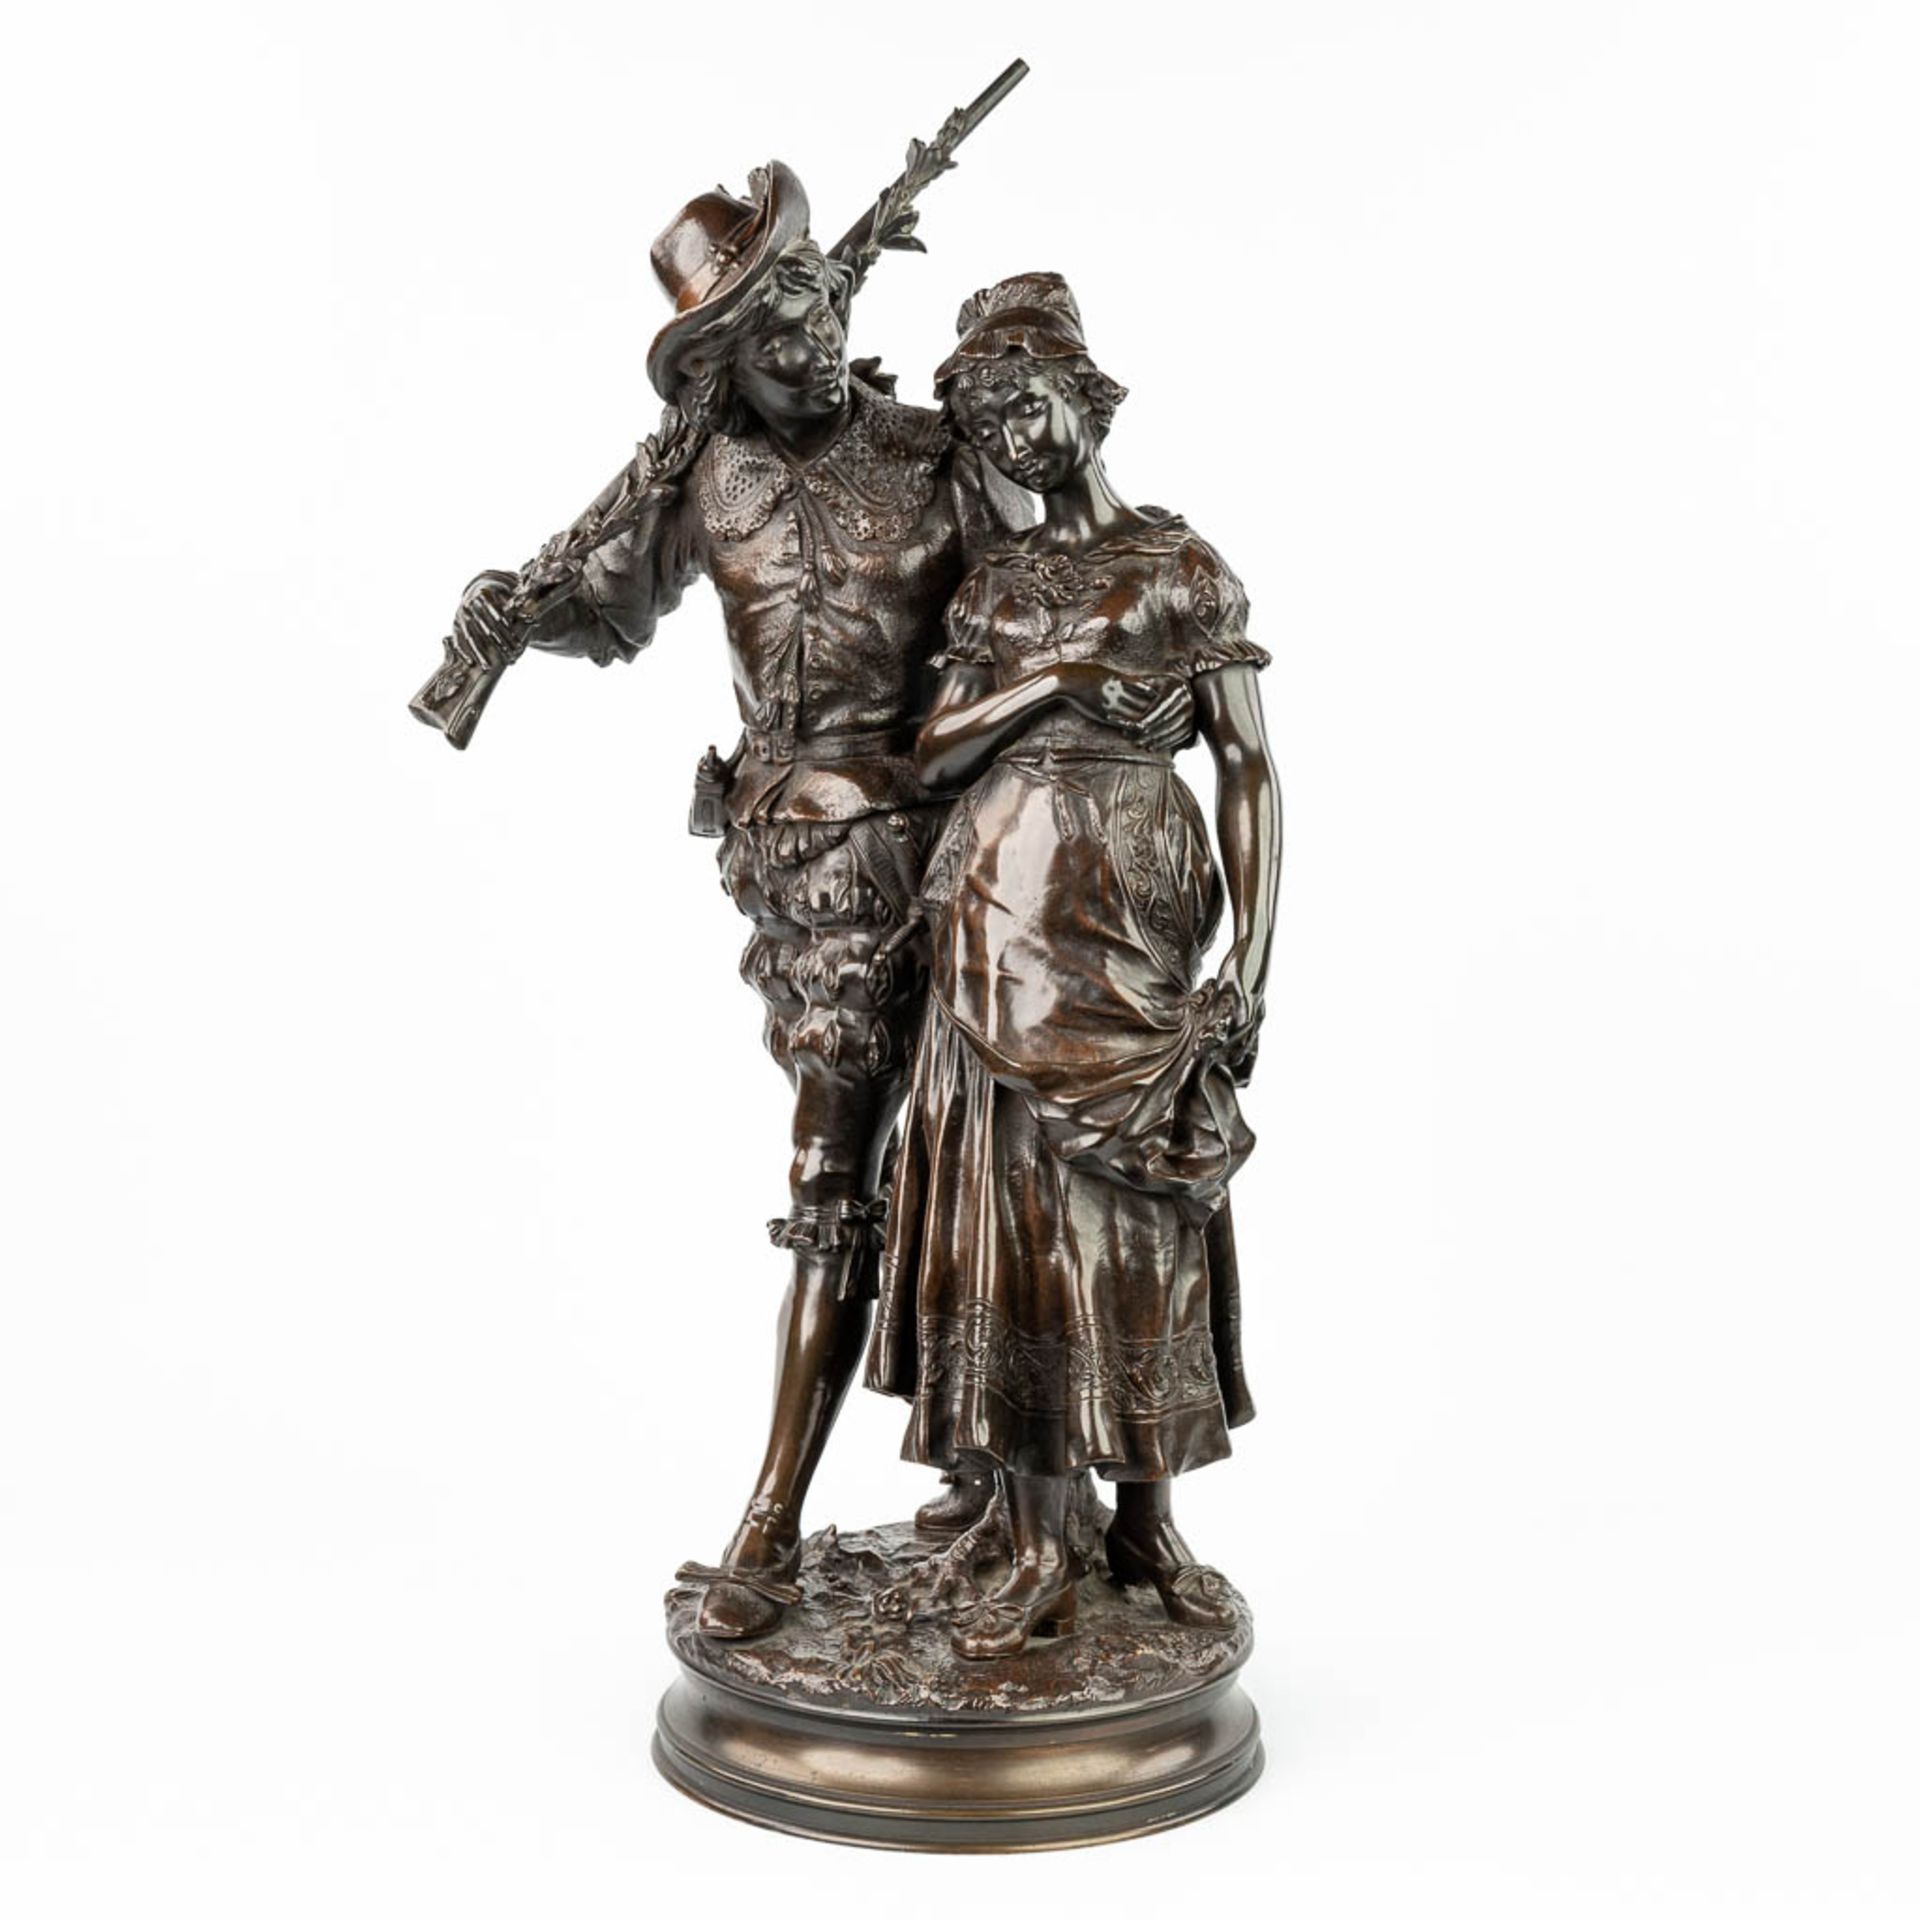 Adrien Etienne GAUDEZ (1845-1902) 'Retour de Chasse' a bronze statue on a revolving base. (H:72cm)